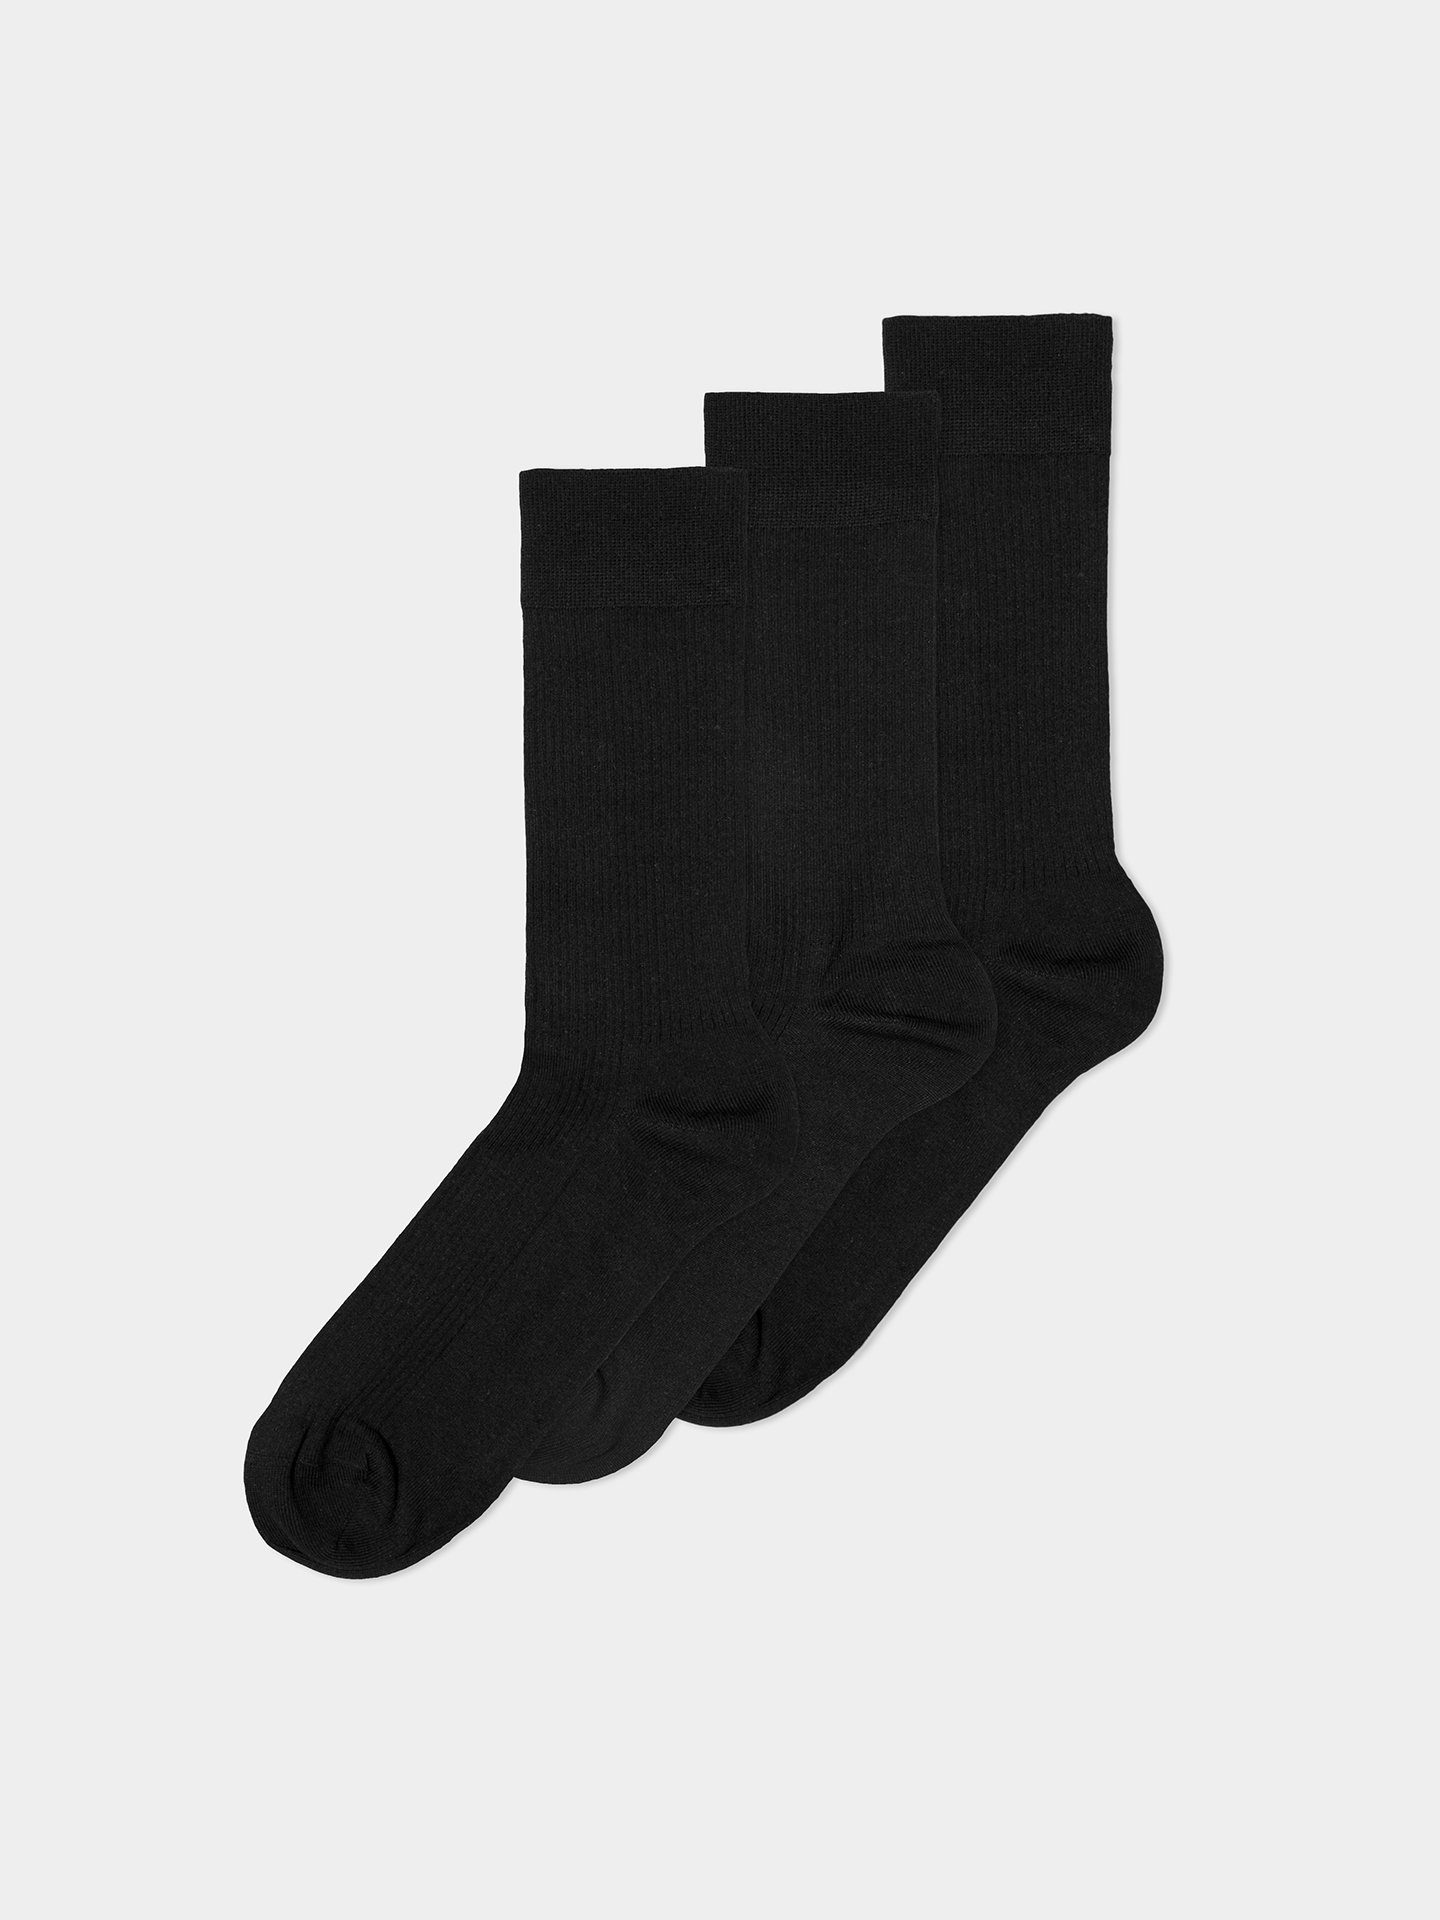 Cotton Erlich Socken Socken 3er Pack Gerippte schwarz (3-Paar) im Textil Casual